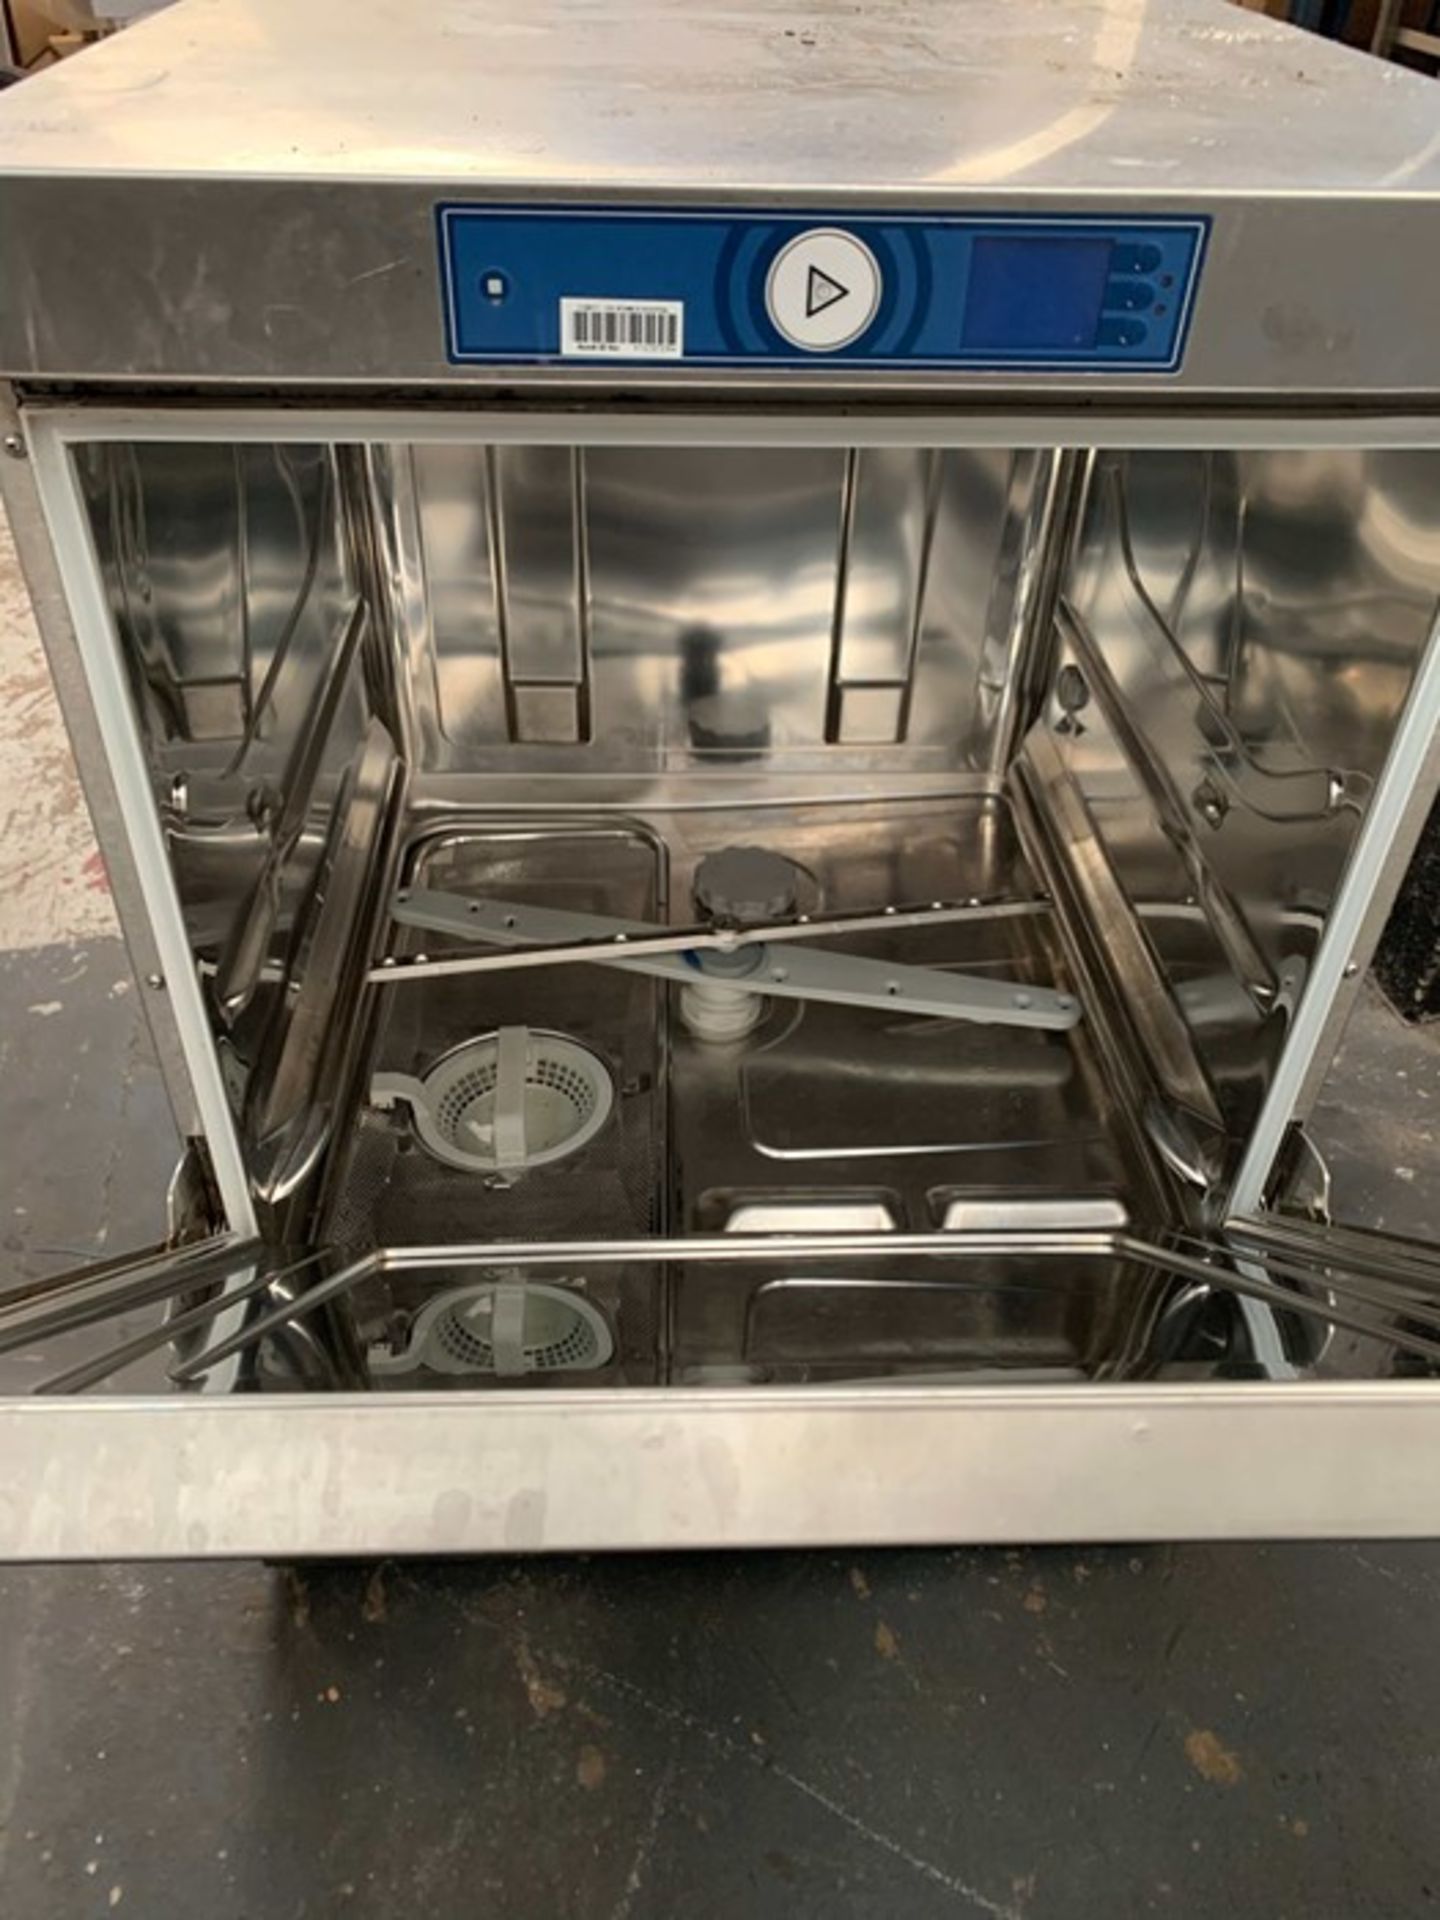 RRP £4758.00 Hobart dishwasher D77656 Commercial Dishwasher - Image 4 of 4